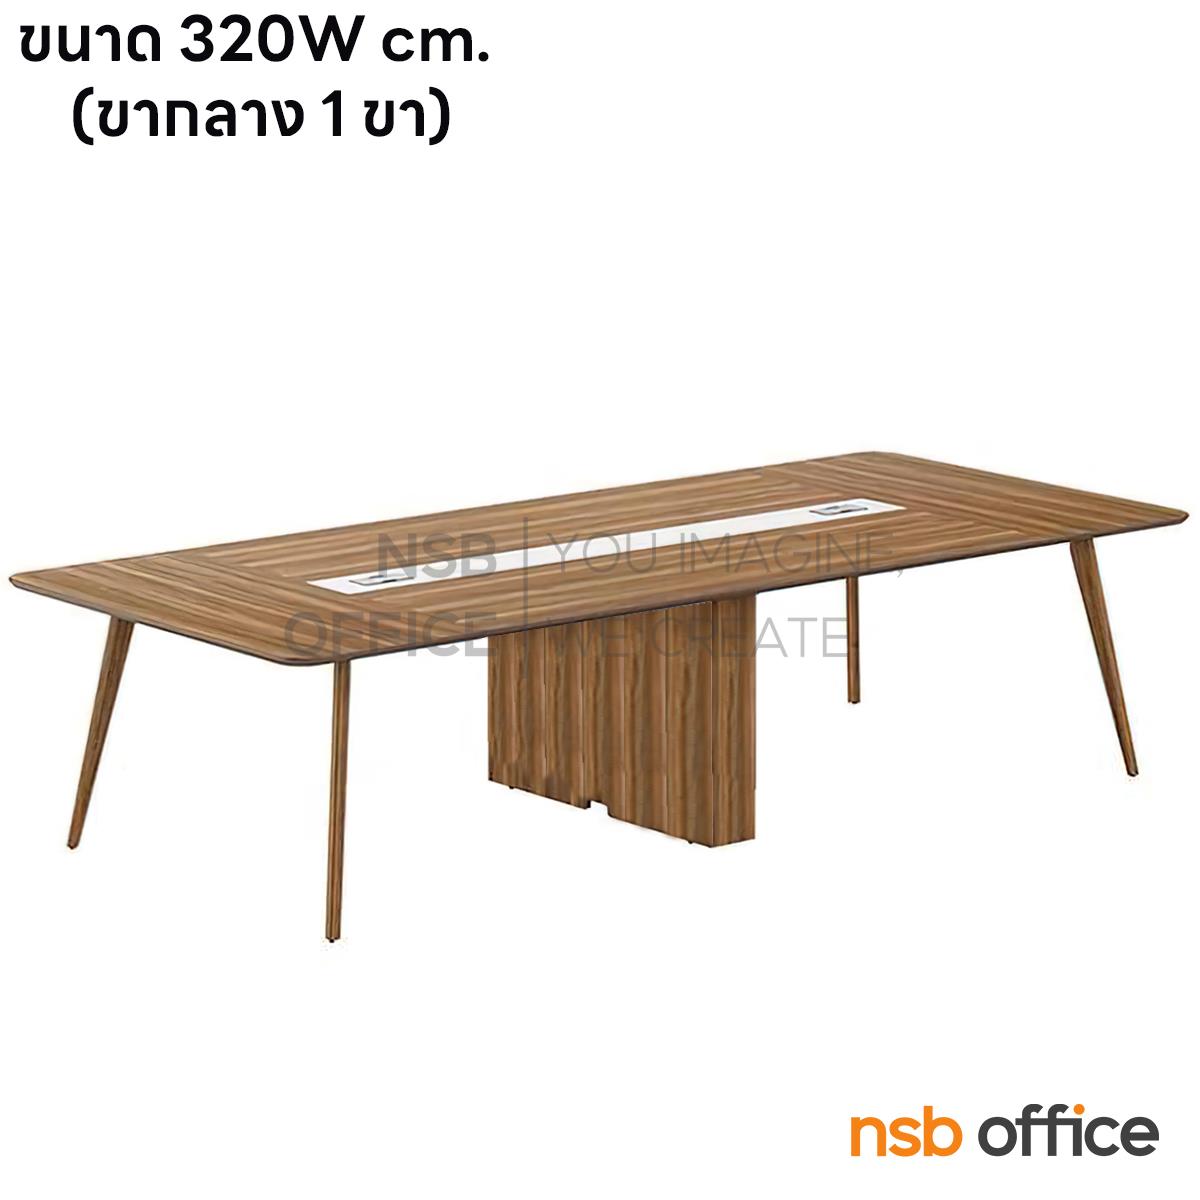 A05A257:โต๊ะประชุมทรงเหลี่ยมมุมมน รุ่น Jacob ll (เจคอบ 2) ขนาด 320W ,480W cm ขาไม้จริง